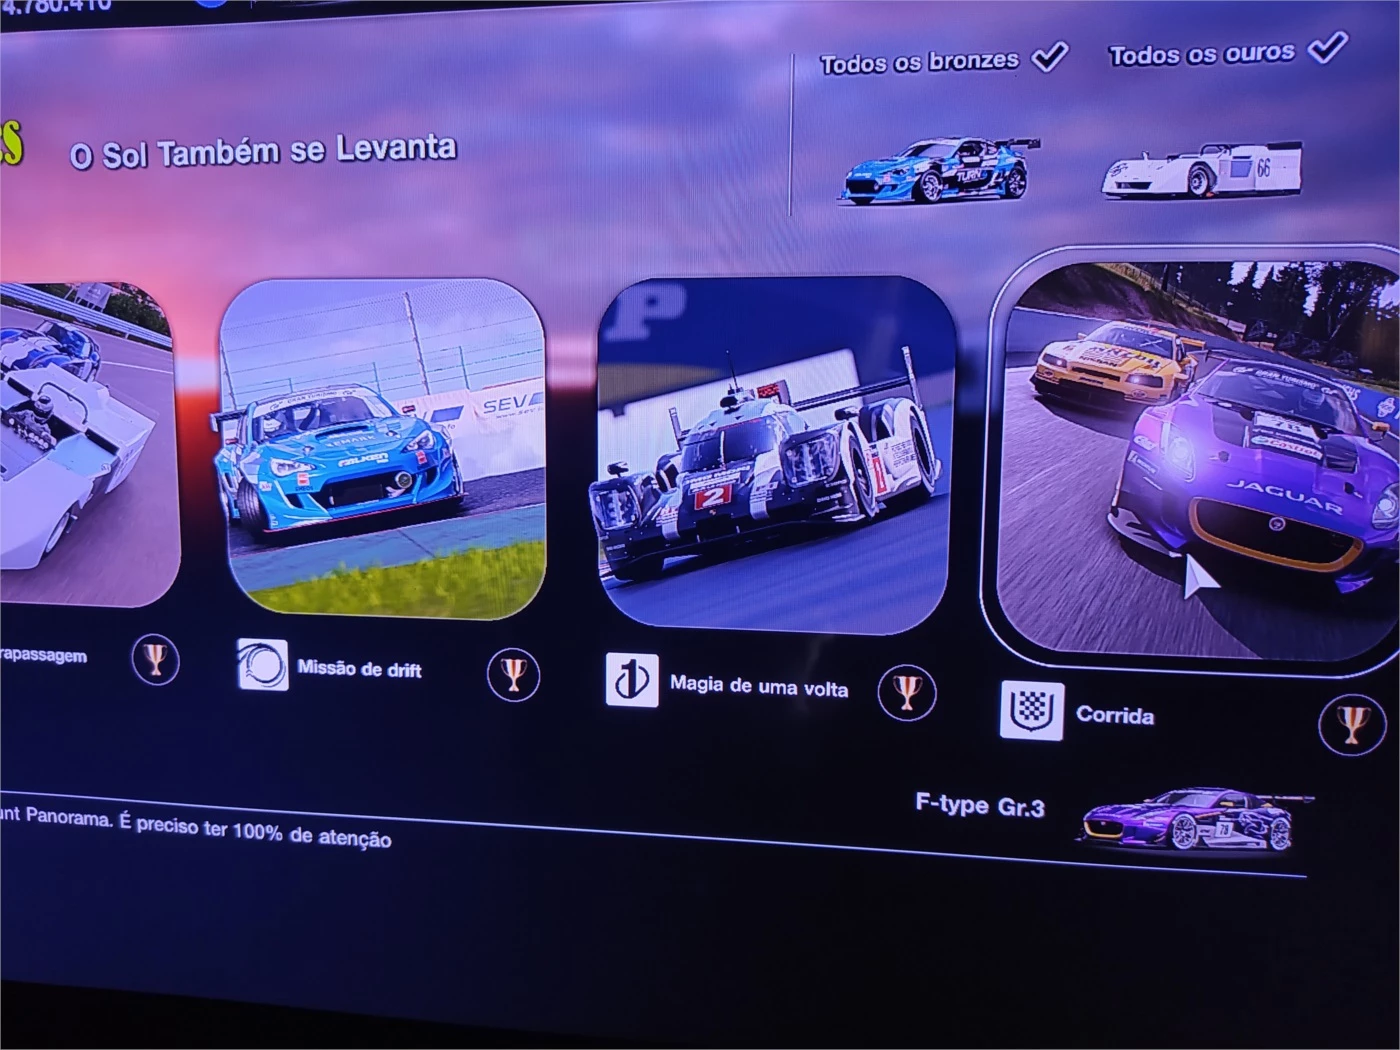 Gran Turismo 7 - Corrida - Único/Multijogador